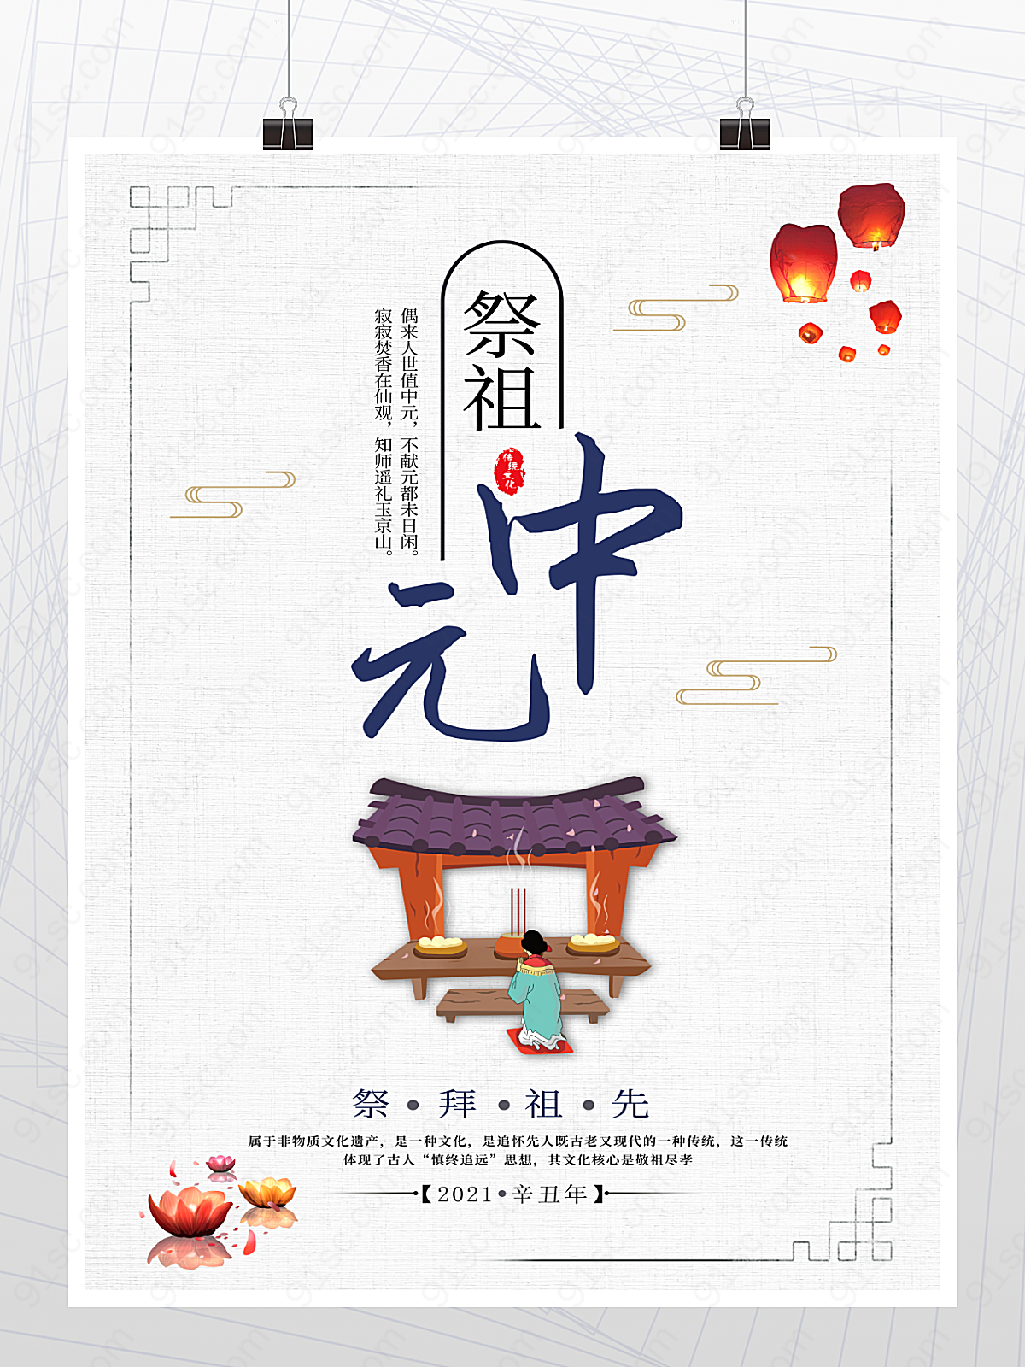 中元节节日传统宣传海报